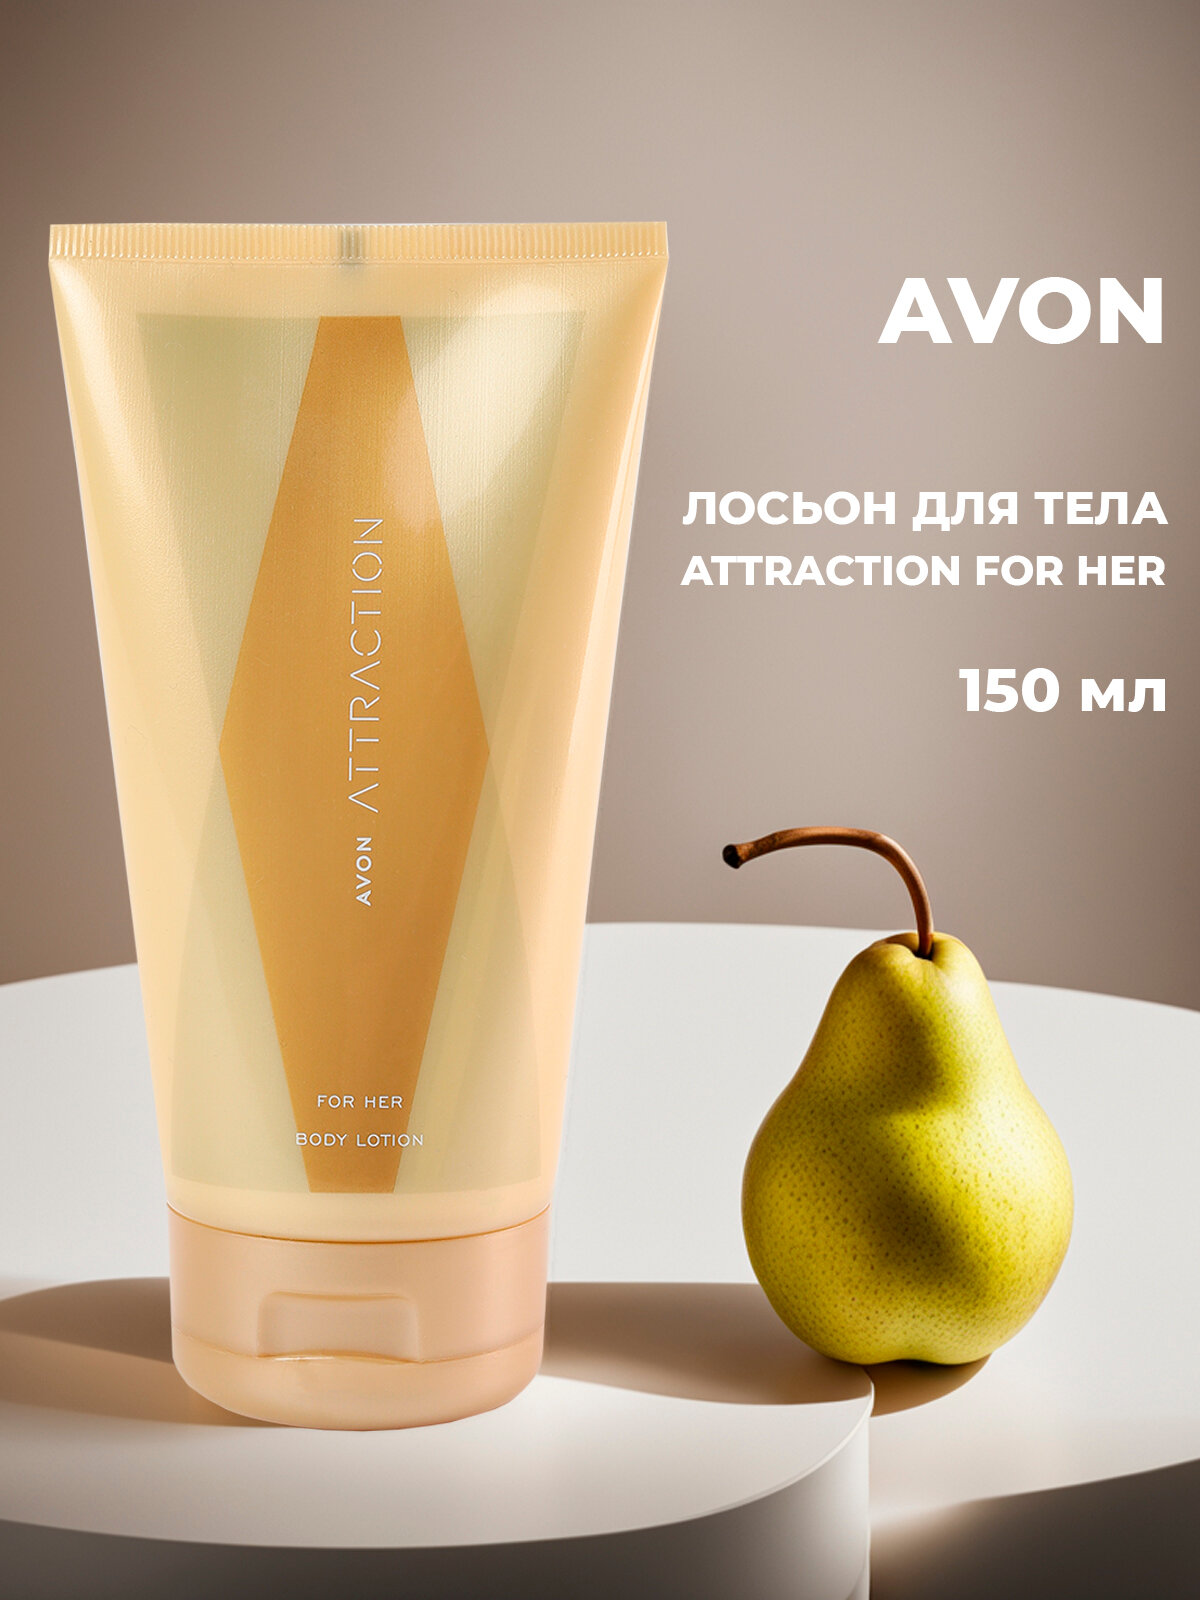 Женский парфюмированный лосьон для тела Avon Attraction for her 150 мл, ароматизированный увлажняющий крем Эйвон, увлажнение и питание